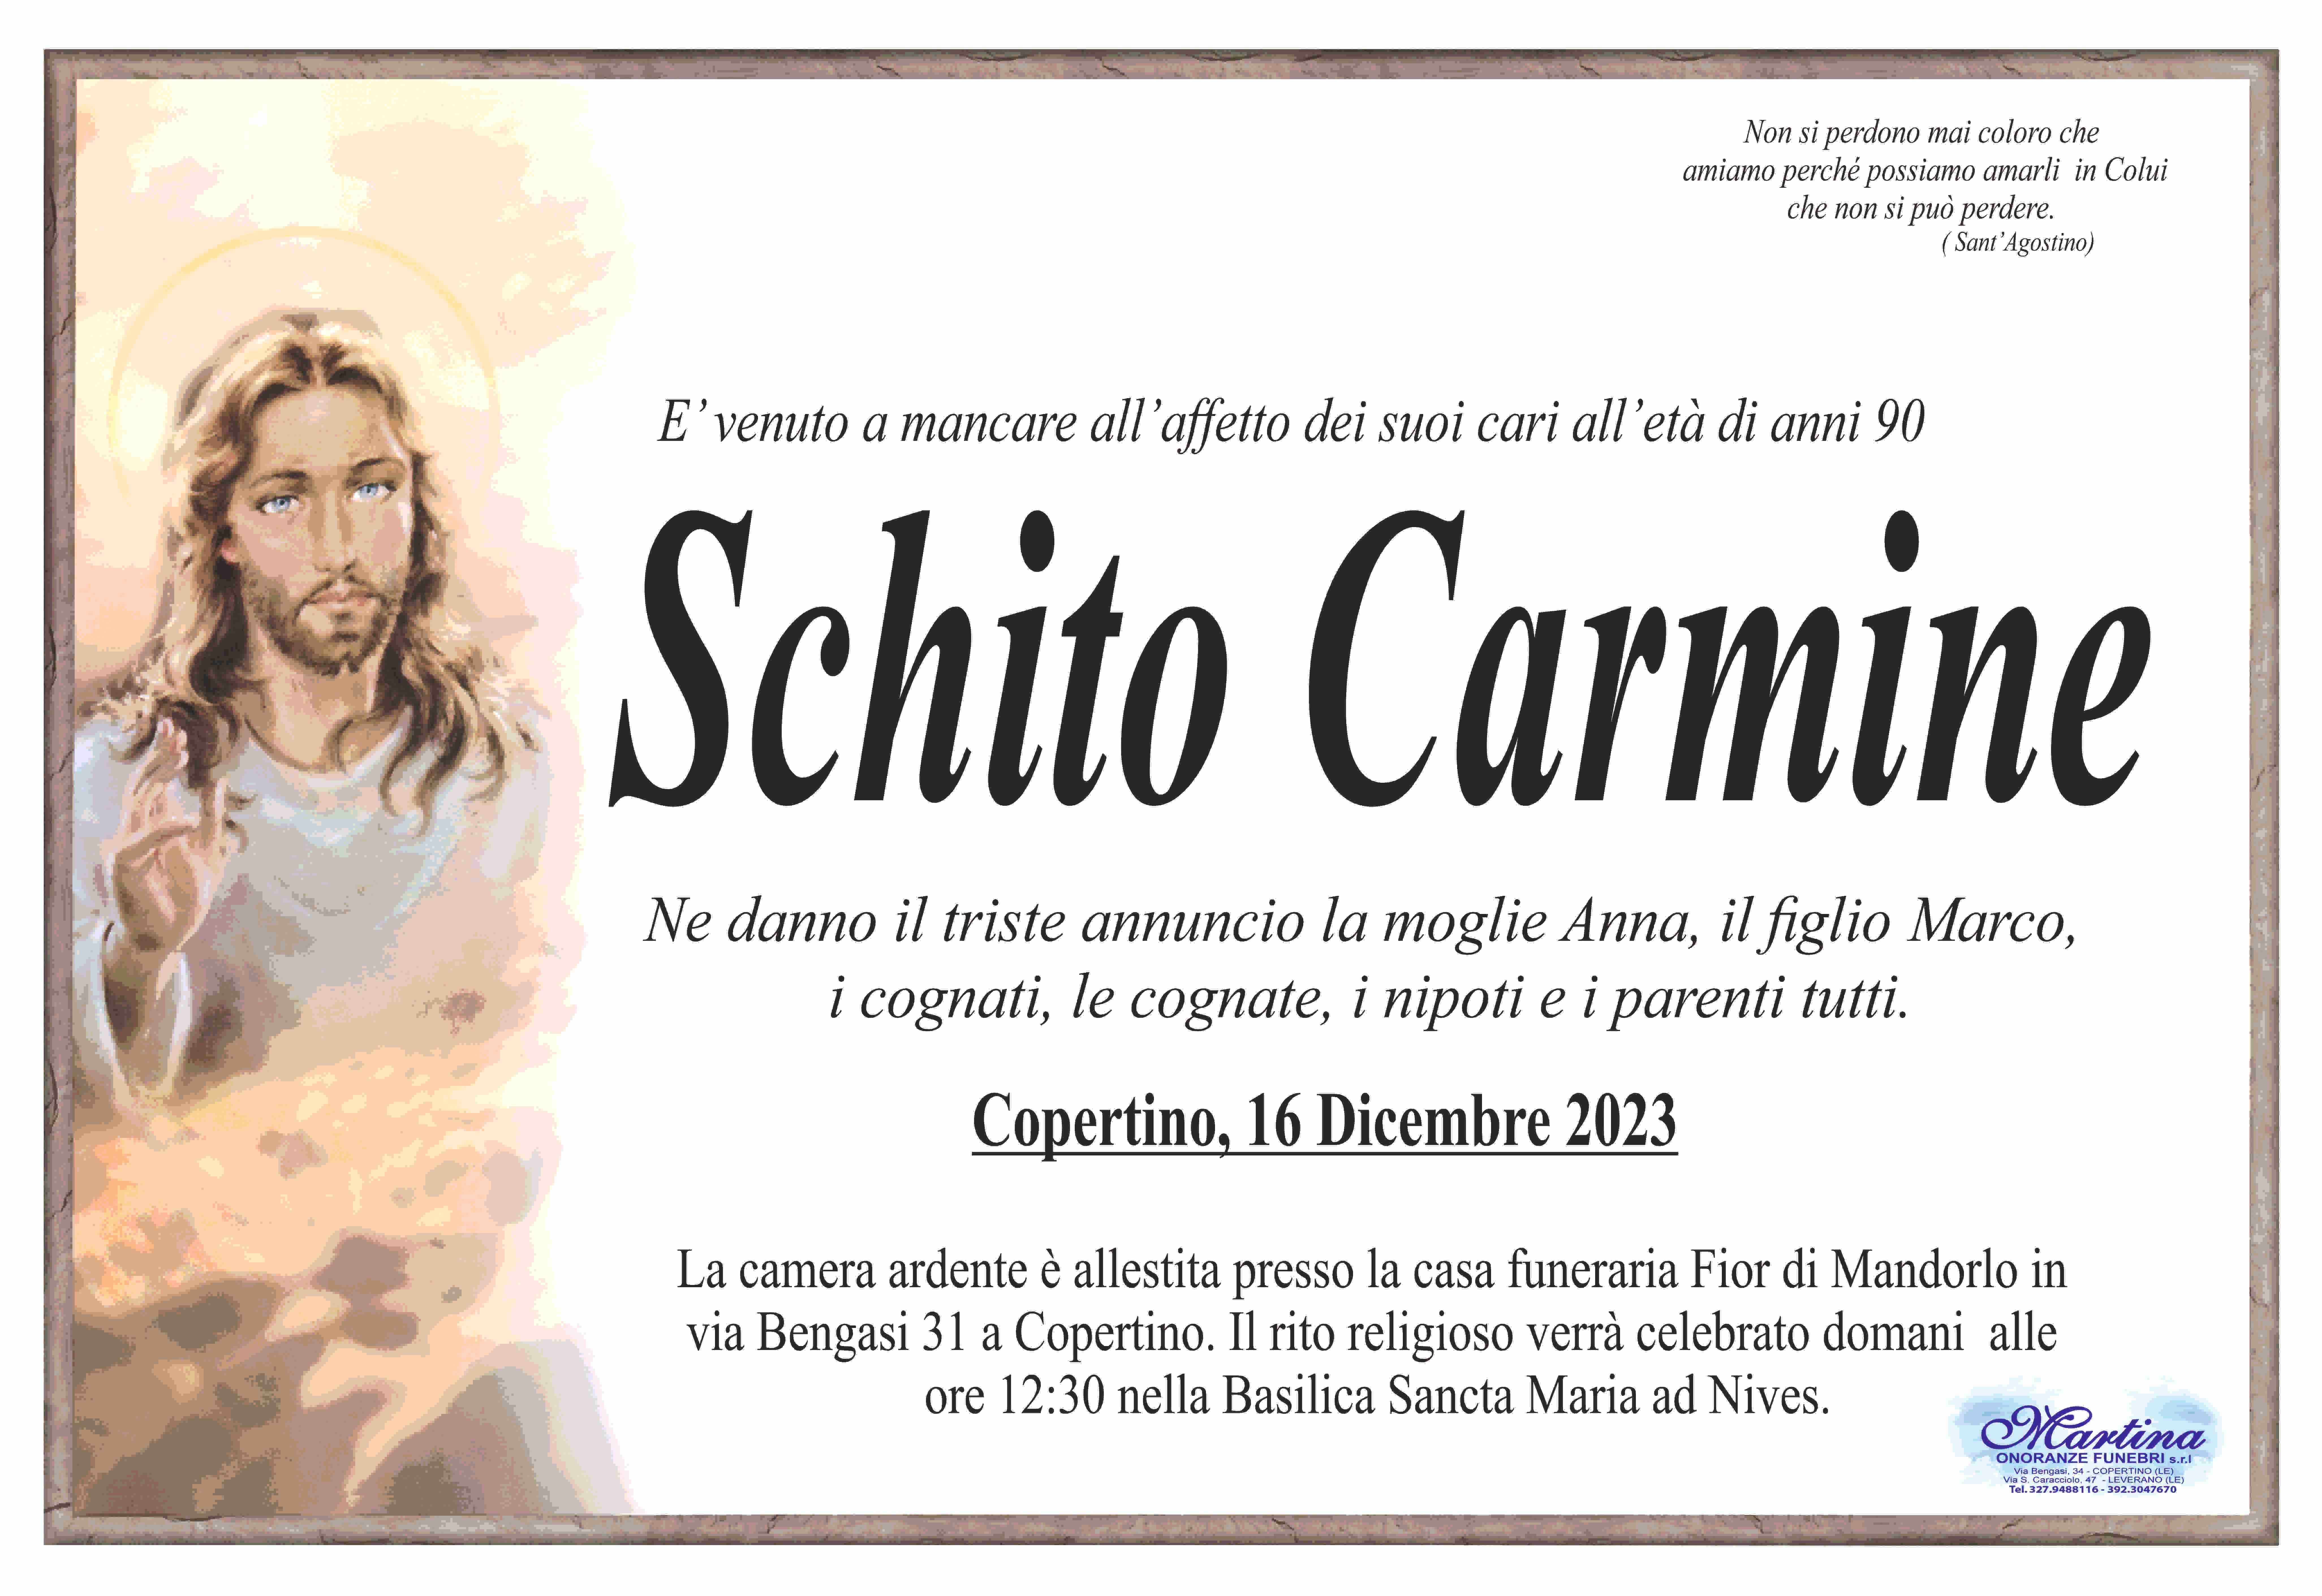 Carmine Schito